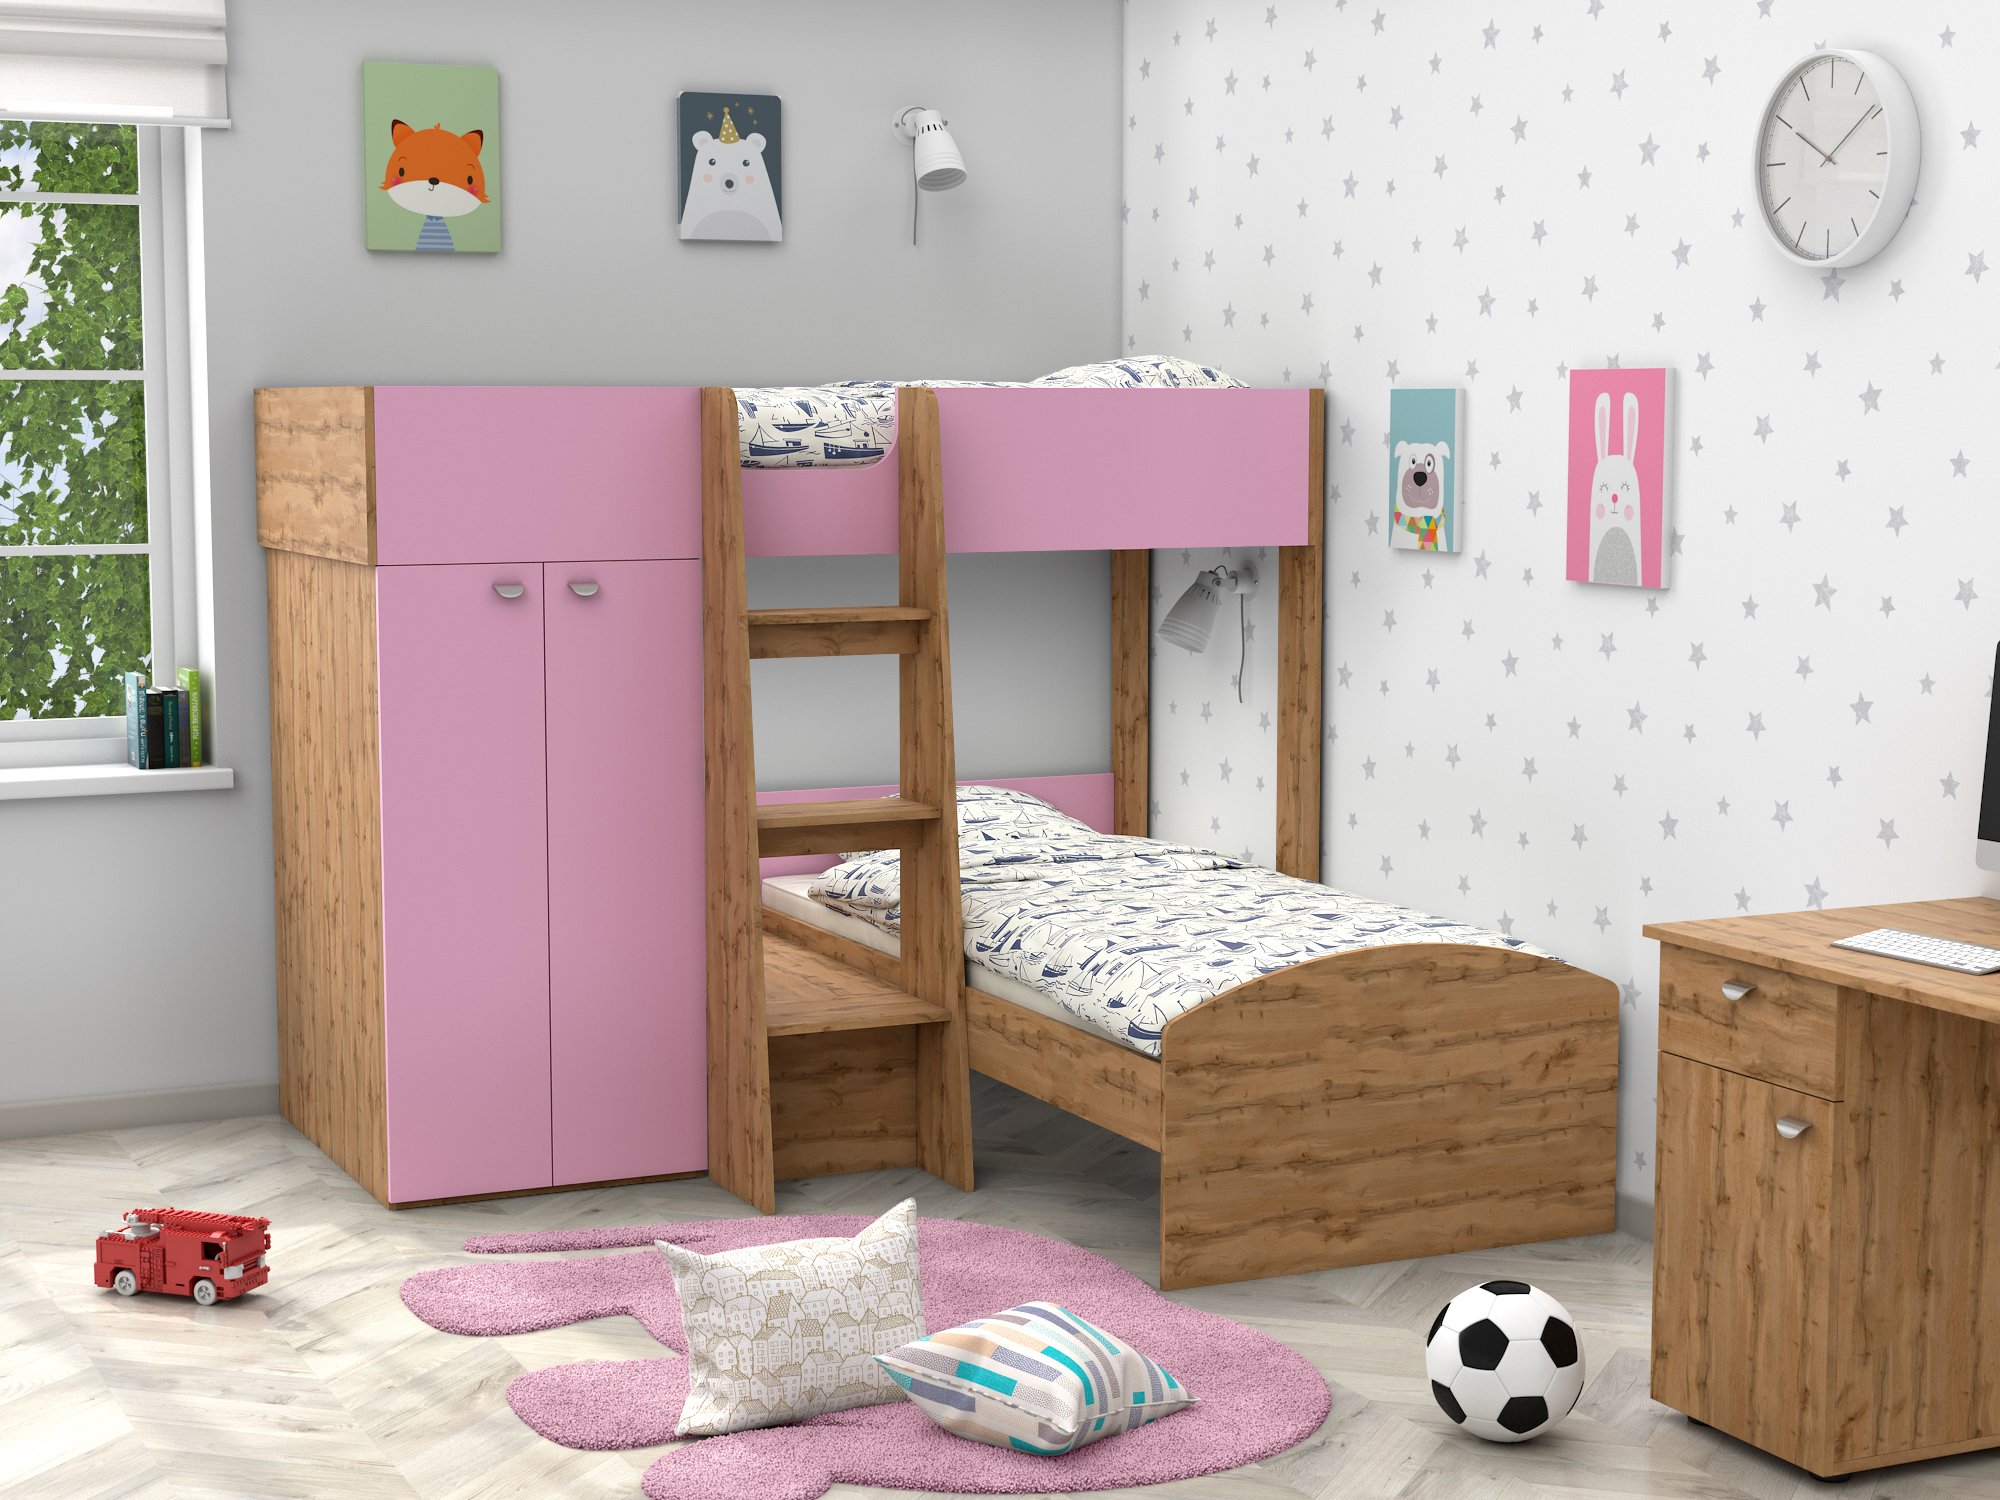 Двухъярусная кровать Golden Kids-4 (90х200) Розовый, Бежевый, ЛДСП двухъярусная кровать golden kids 4 90х200 дуб молочный белый бежевый коричневый темный лдсп